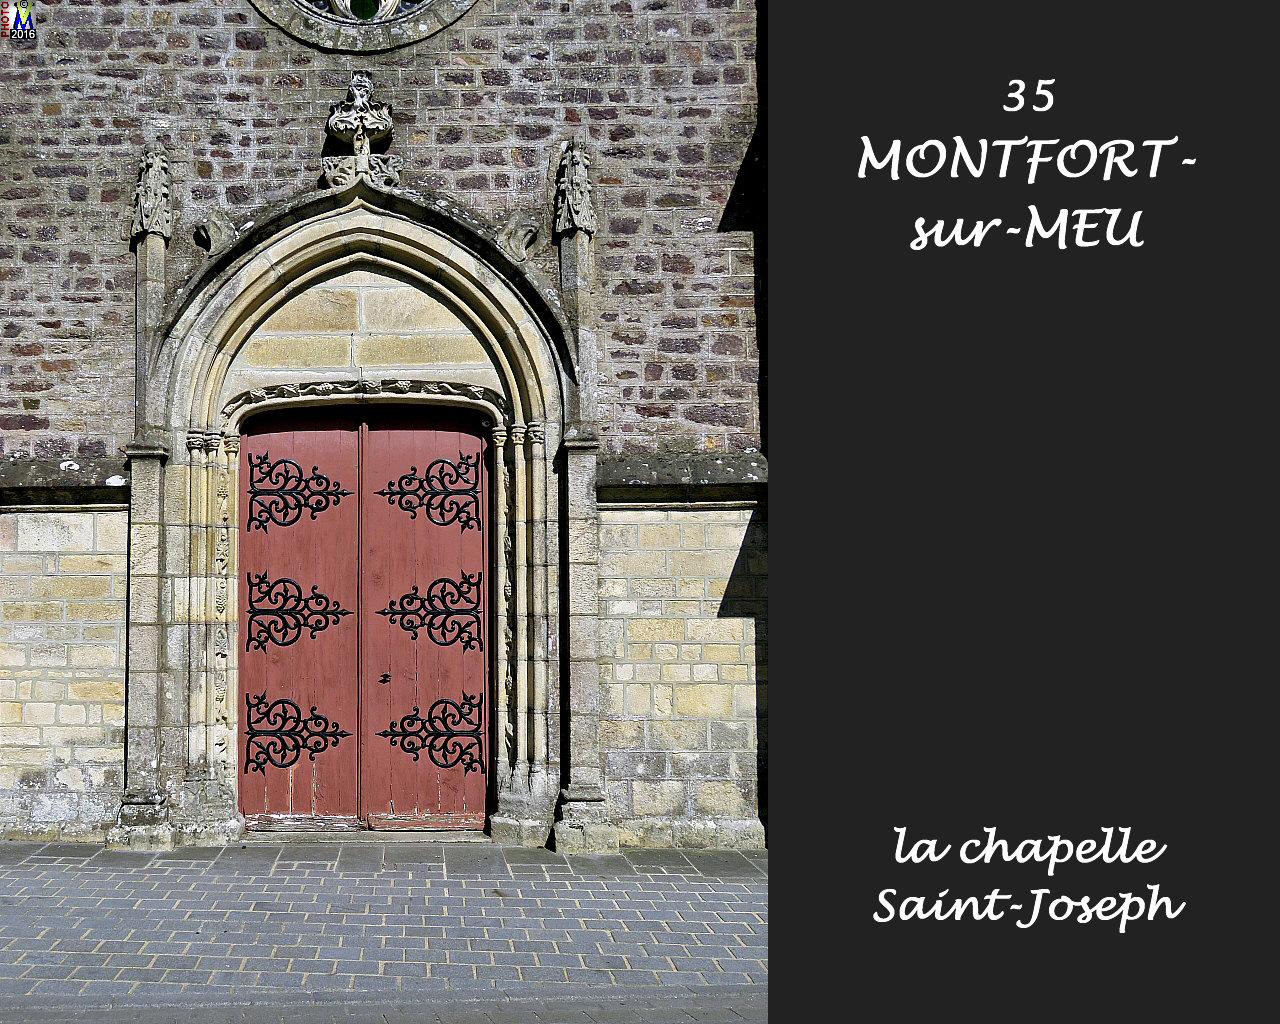 35MONTFORT-MEU_chapelle_104.jpg